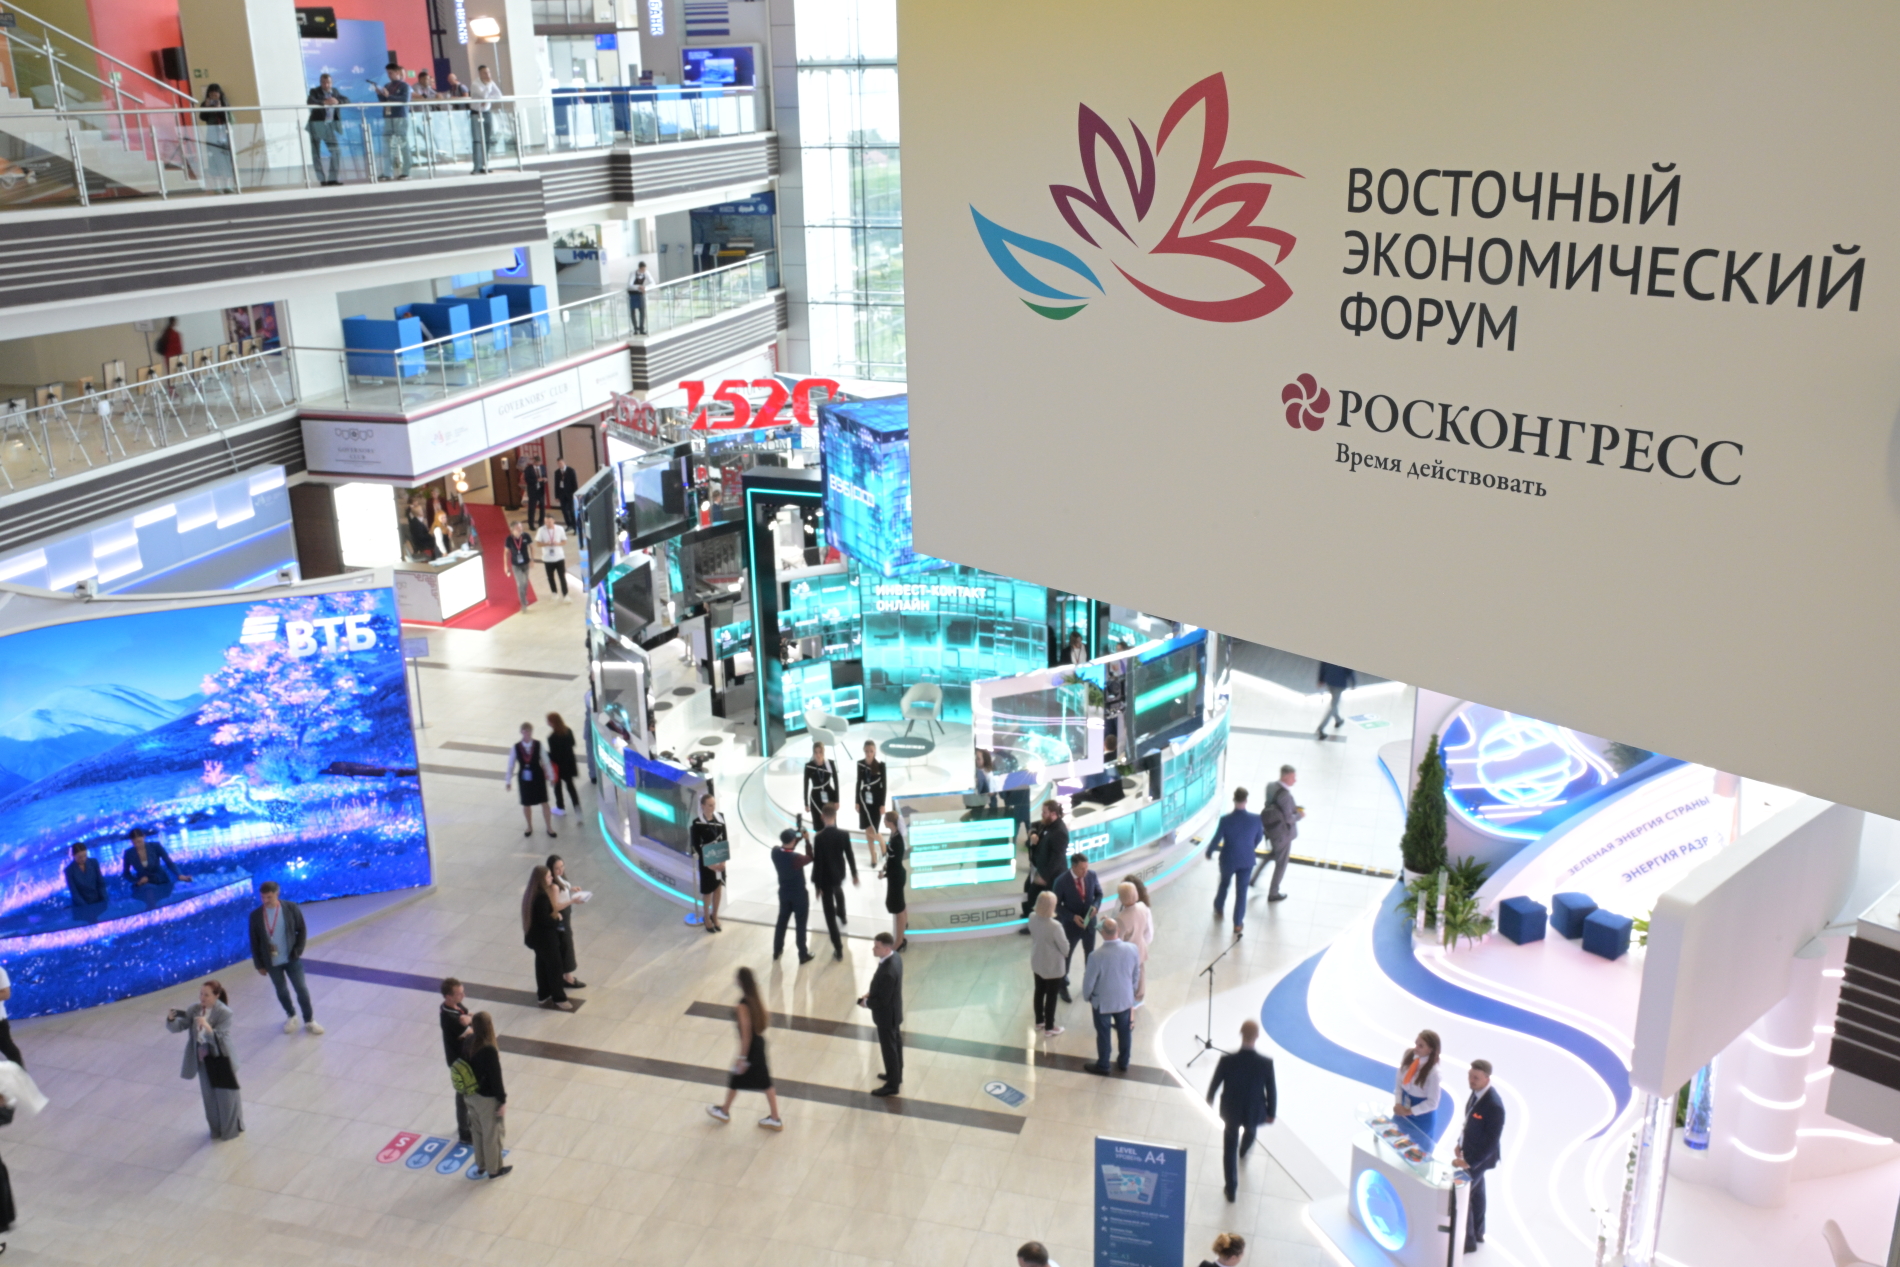 Во Владивостоке стартовала основная деловая программа ВЭФ